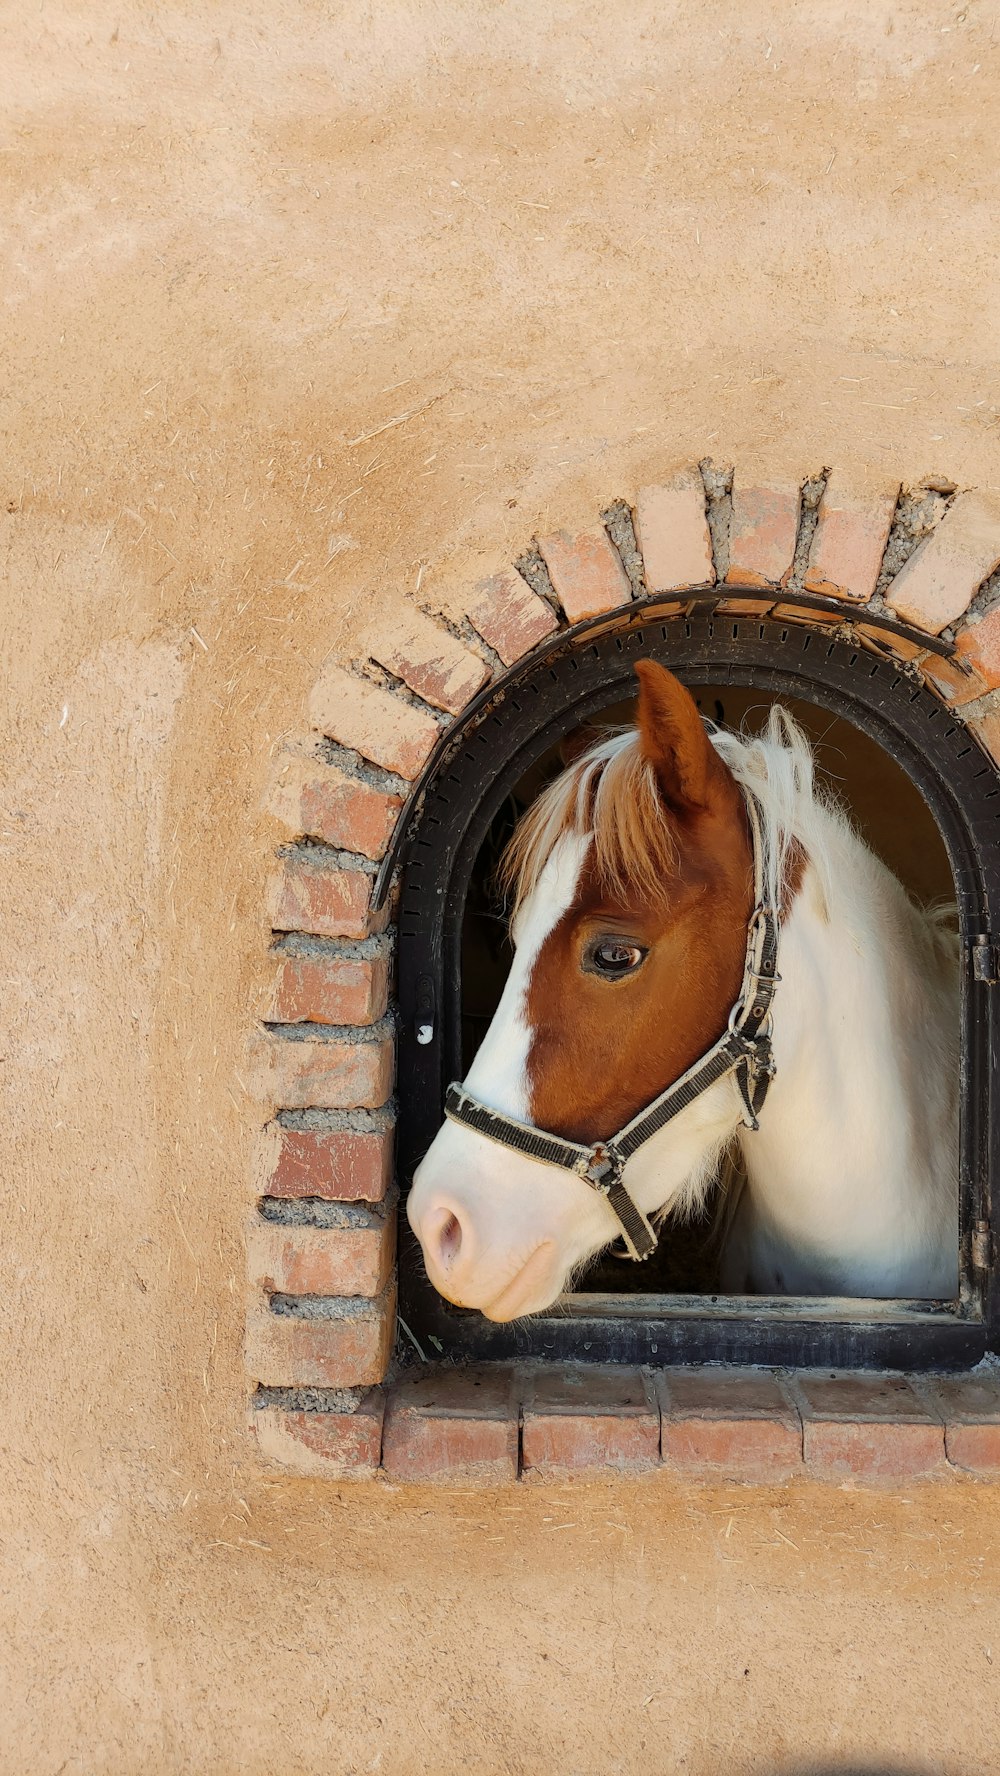 Un caballo marrón y blanco asomando la cabeza por una ventana